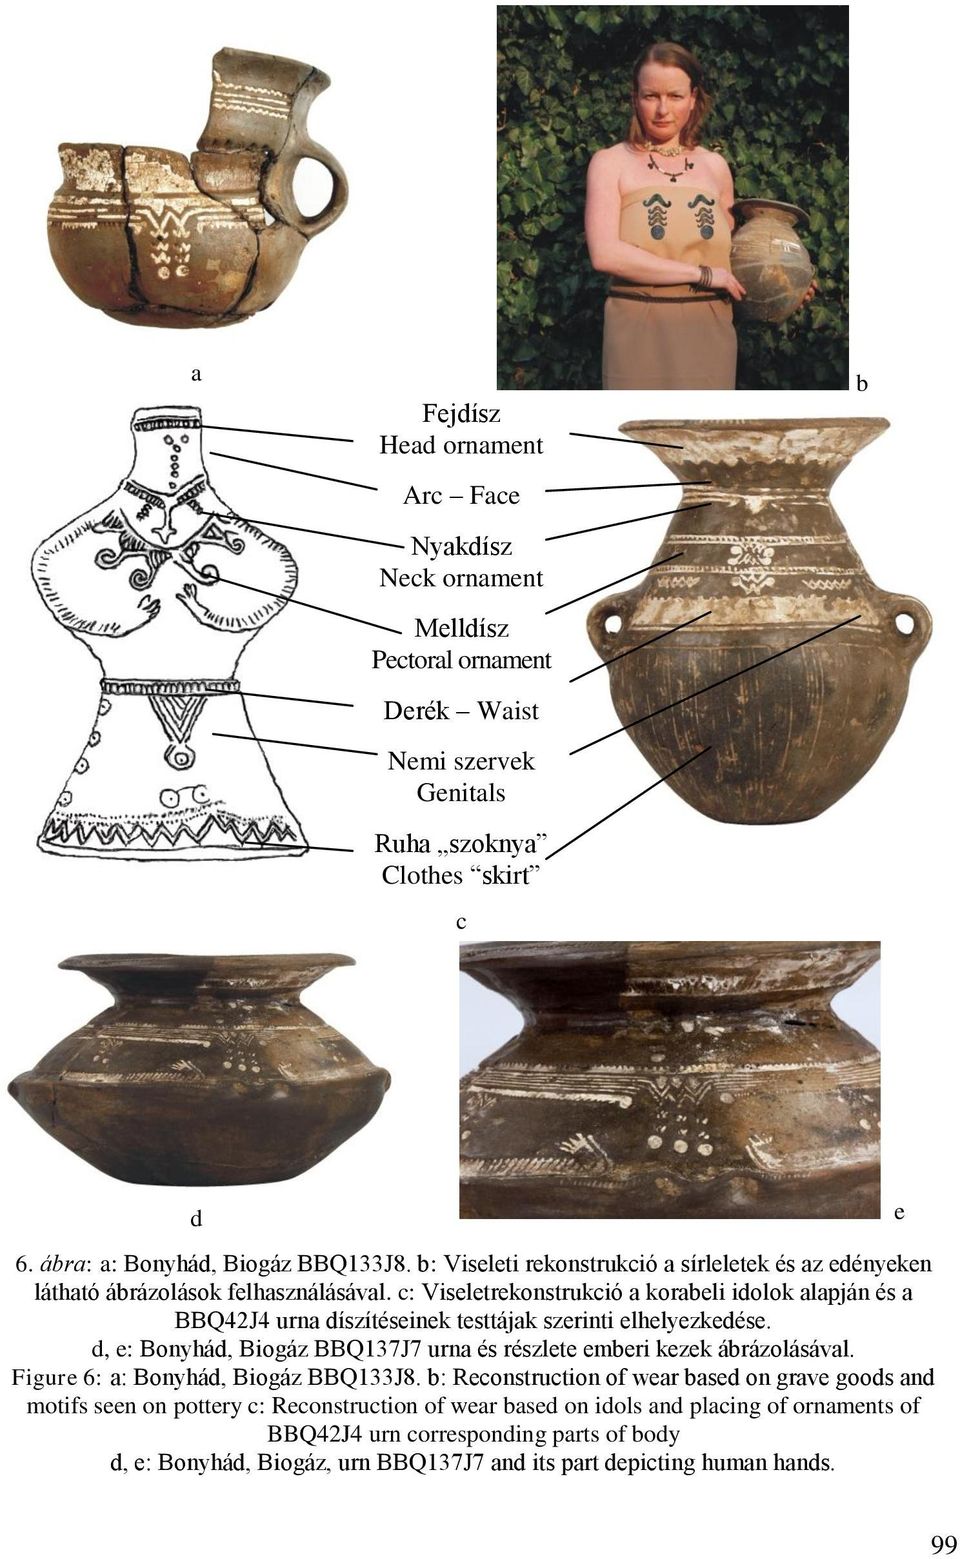 c: Viseletrekonstrukció a korabeli idolok alapján és a BBQ42J4 urna díszítéseinek testtájak szerinti elhelyezkedése. d, e: Bonyhád, Biogáz BBQ137J7 urna és részlete emberi kezek ábrázolásával.